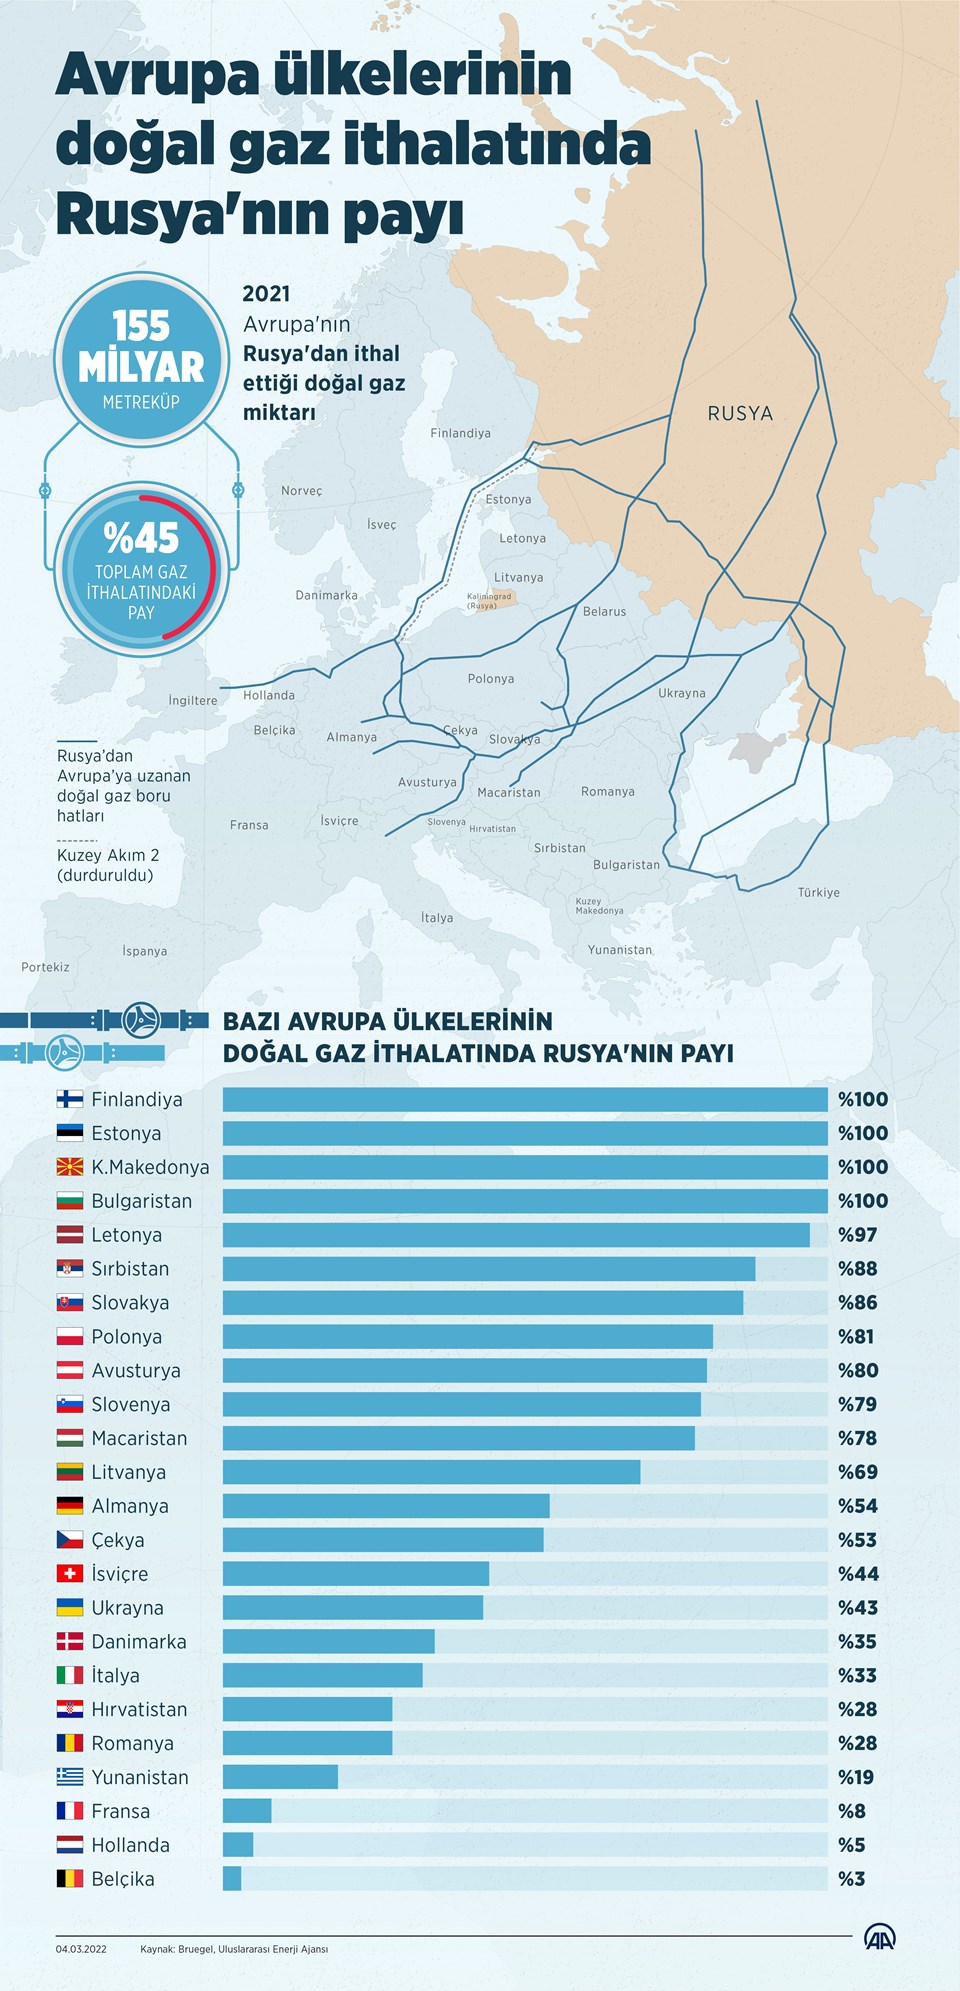 Rusya'nın Avrupa'ya verdiği doğalgaz ithalatındaki pay